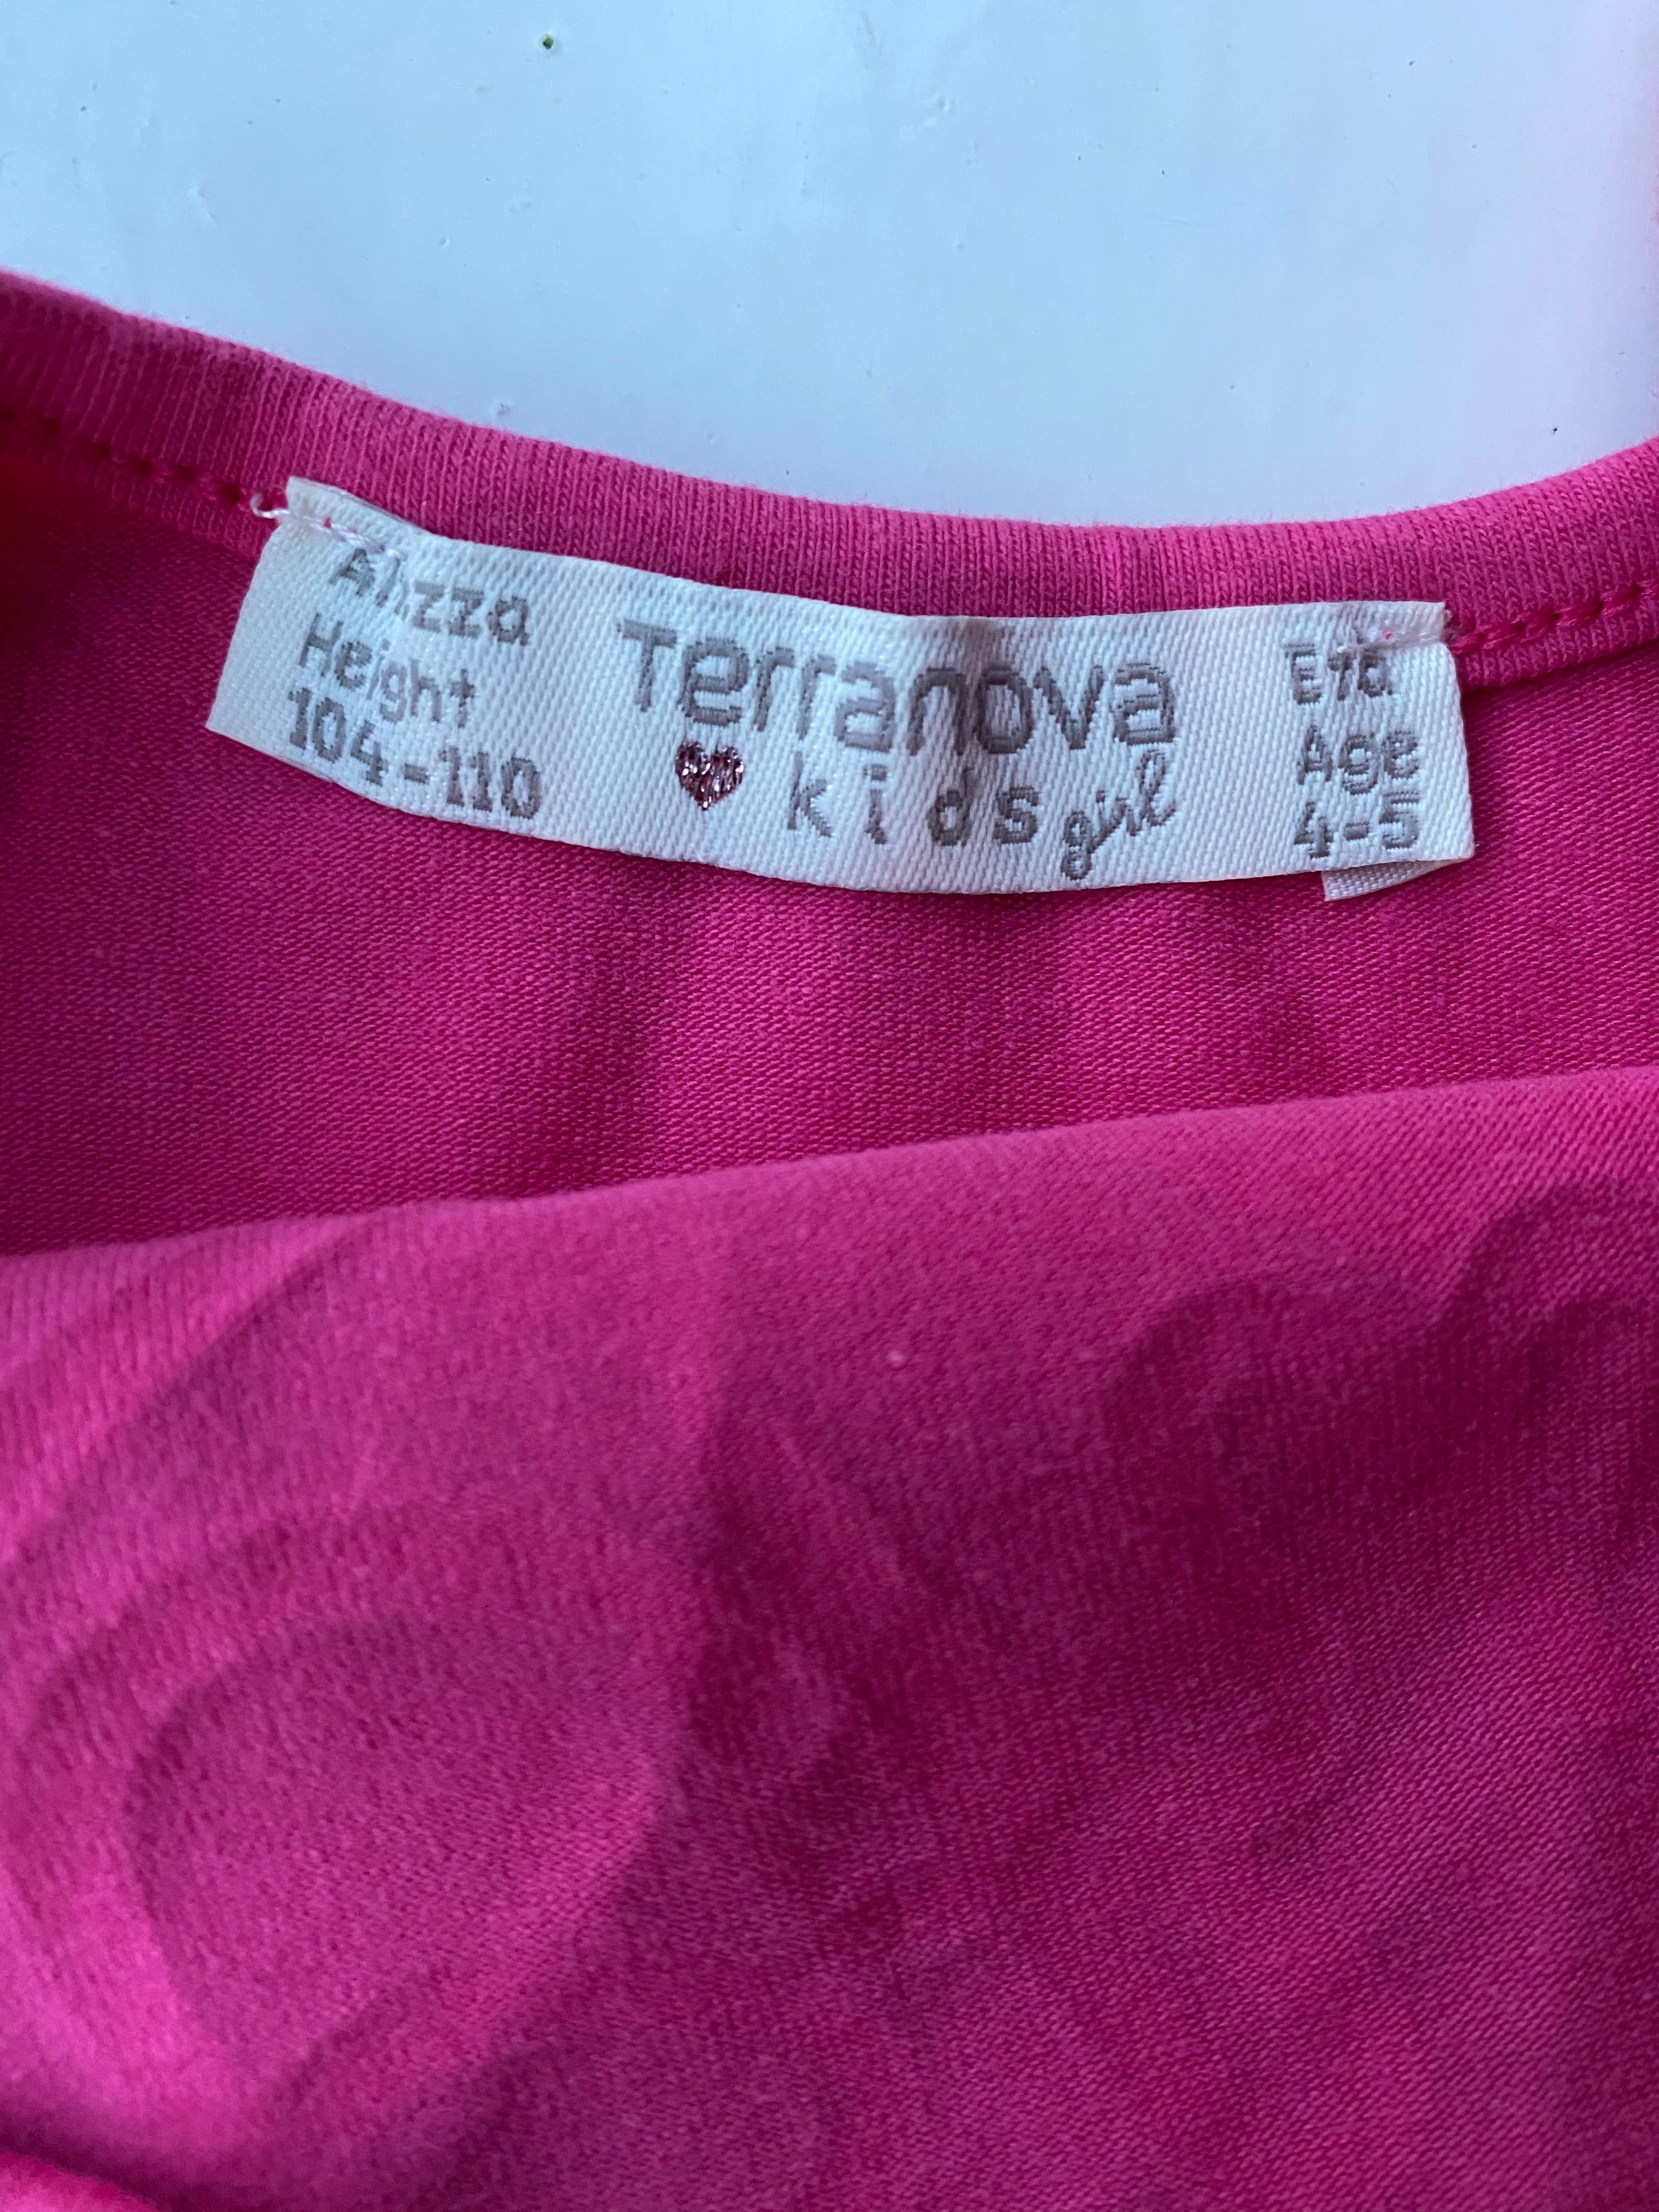 Body kostium Terranova 104-10